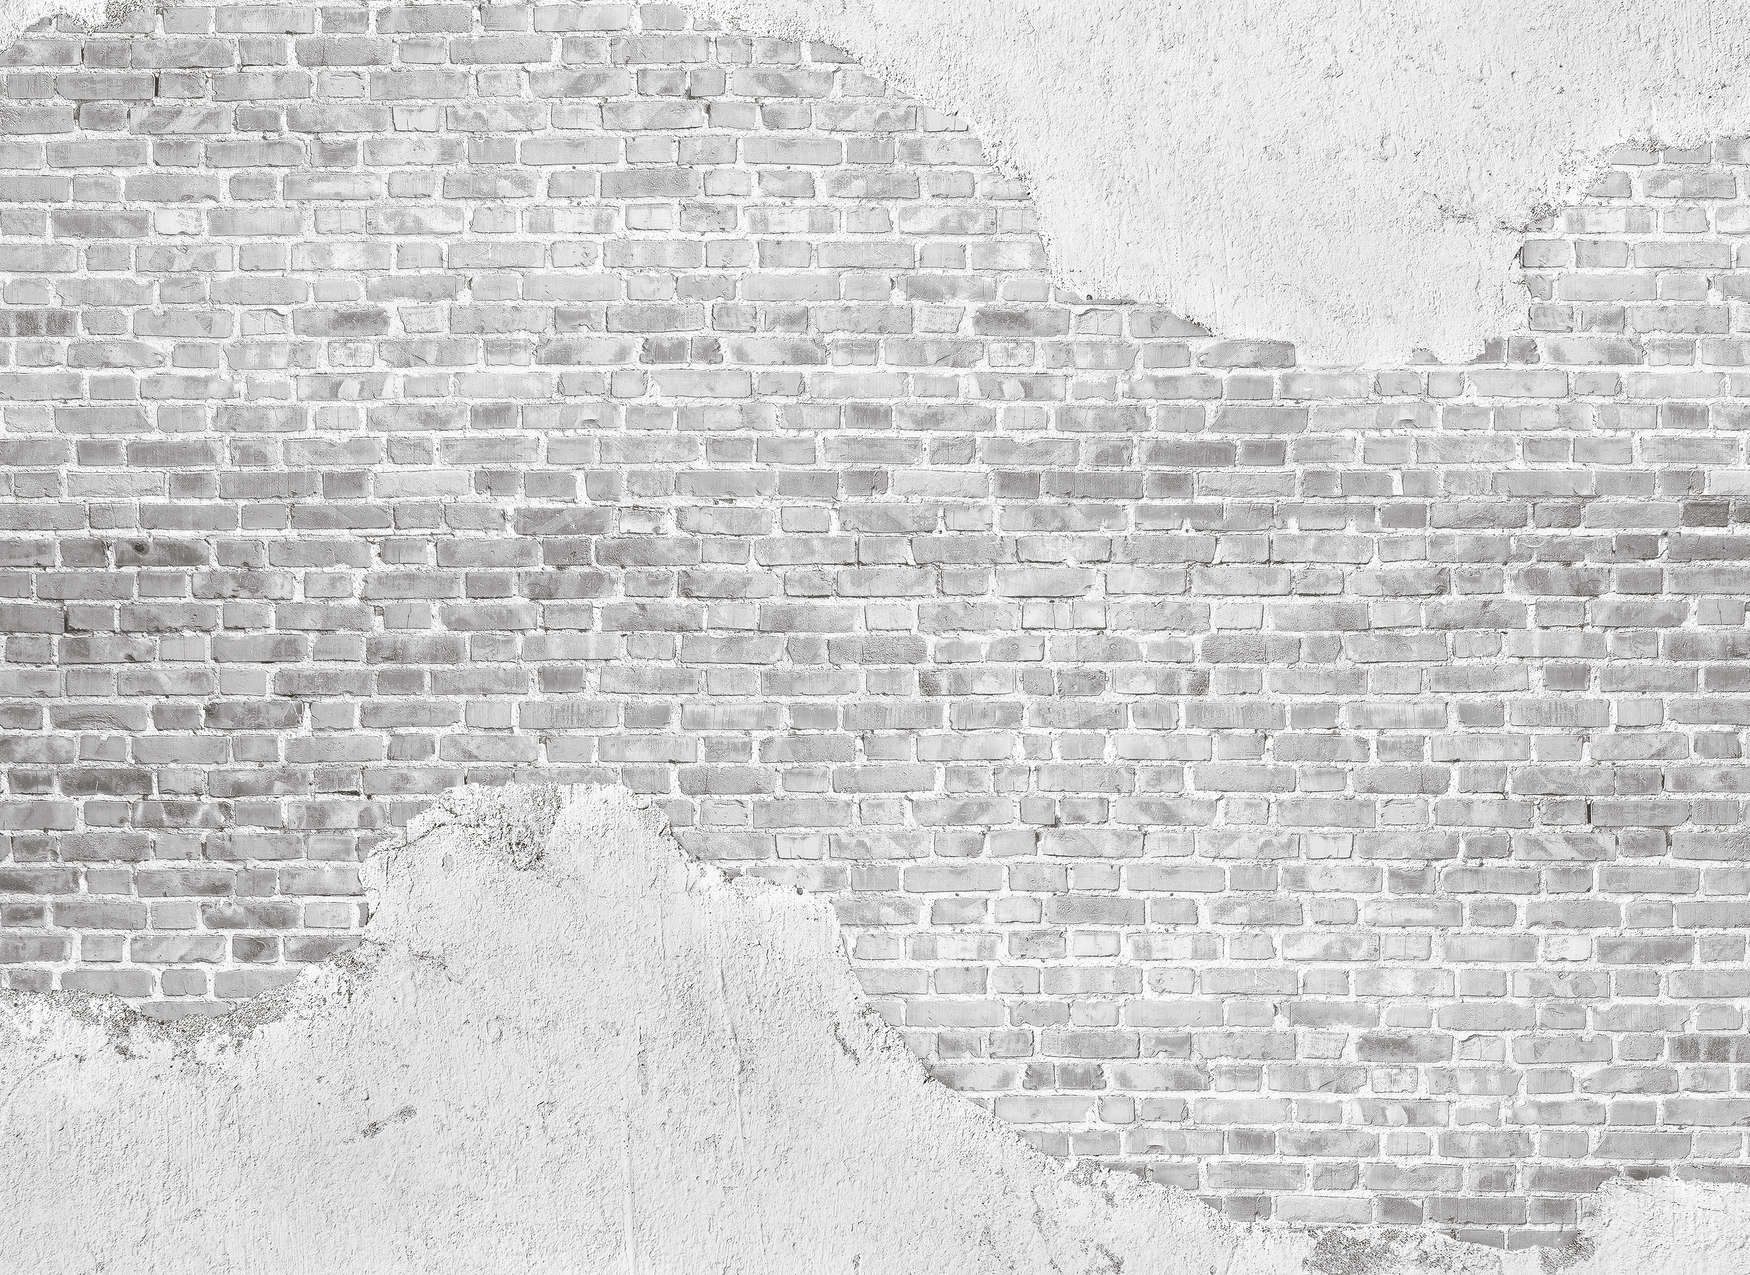             Backsteinmauer mit angesagten Industrial Look – Grau
        